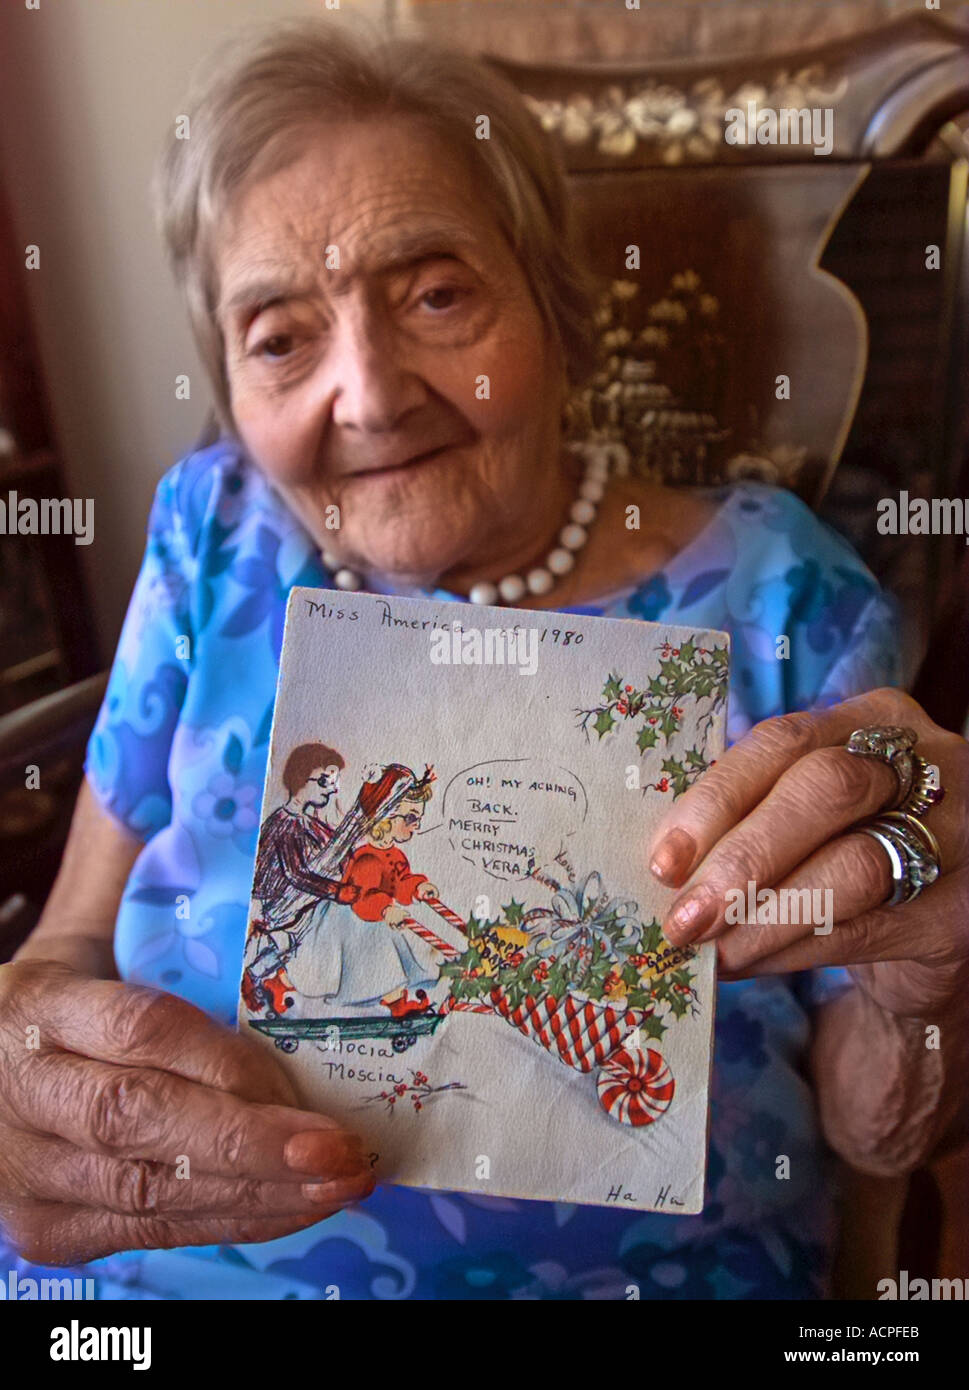 Singolare storia di allegria natalizia amore dedizione Natale carta fatta a mano con l'artista Foto Stock